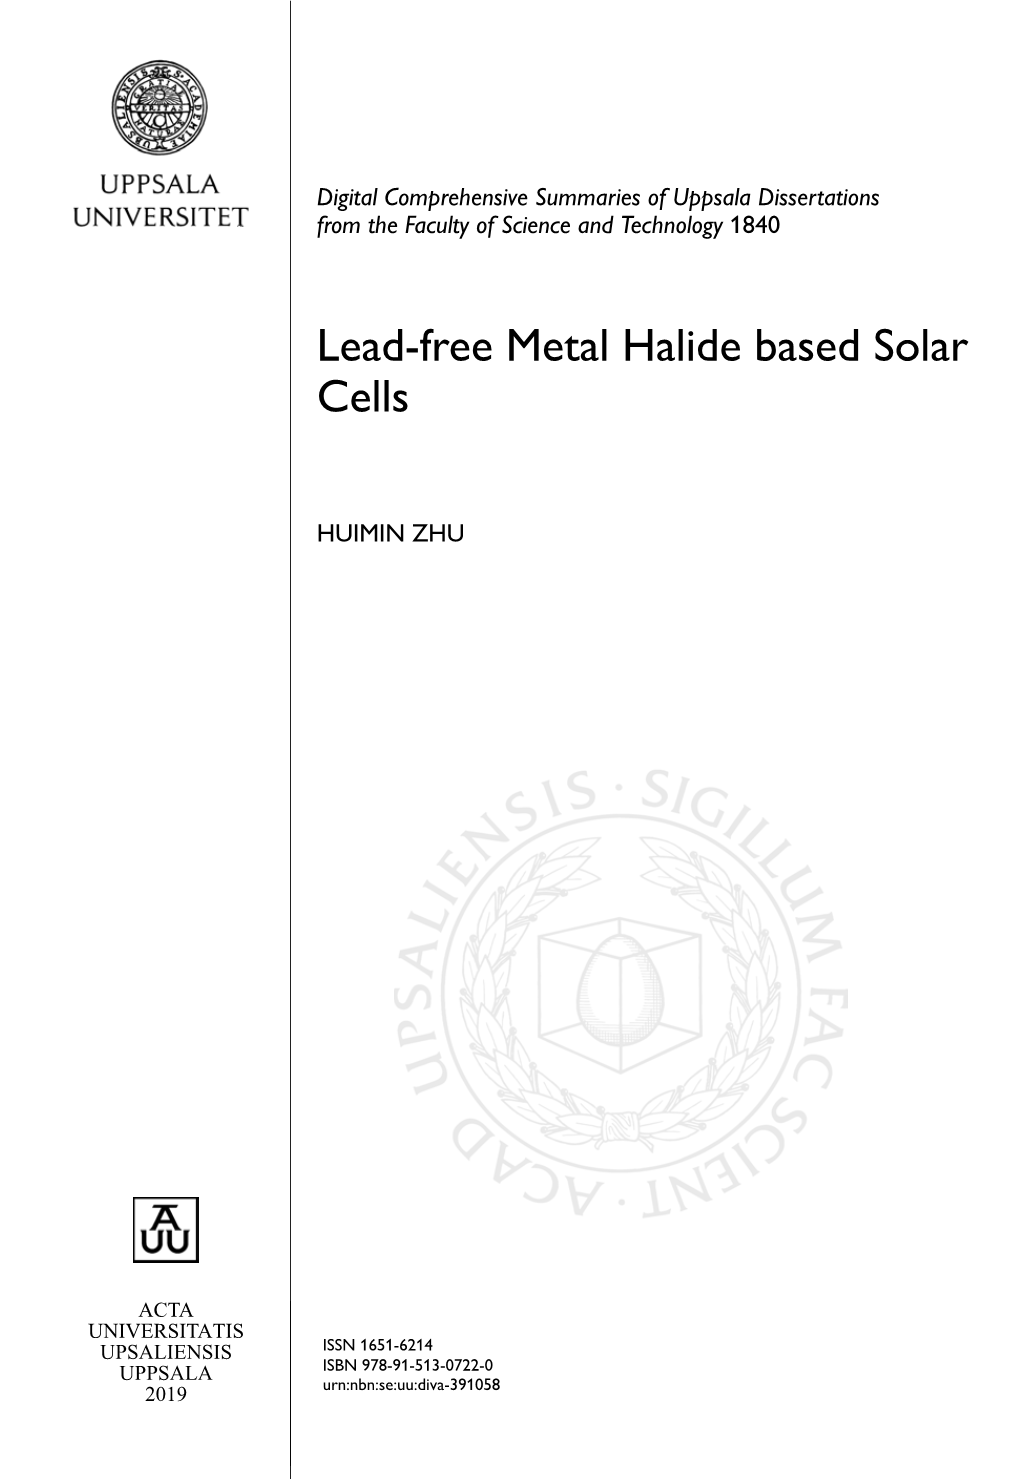 Lead-Free Metal Halide Based Solar Cells